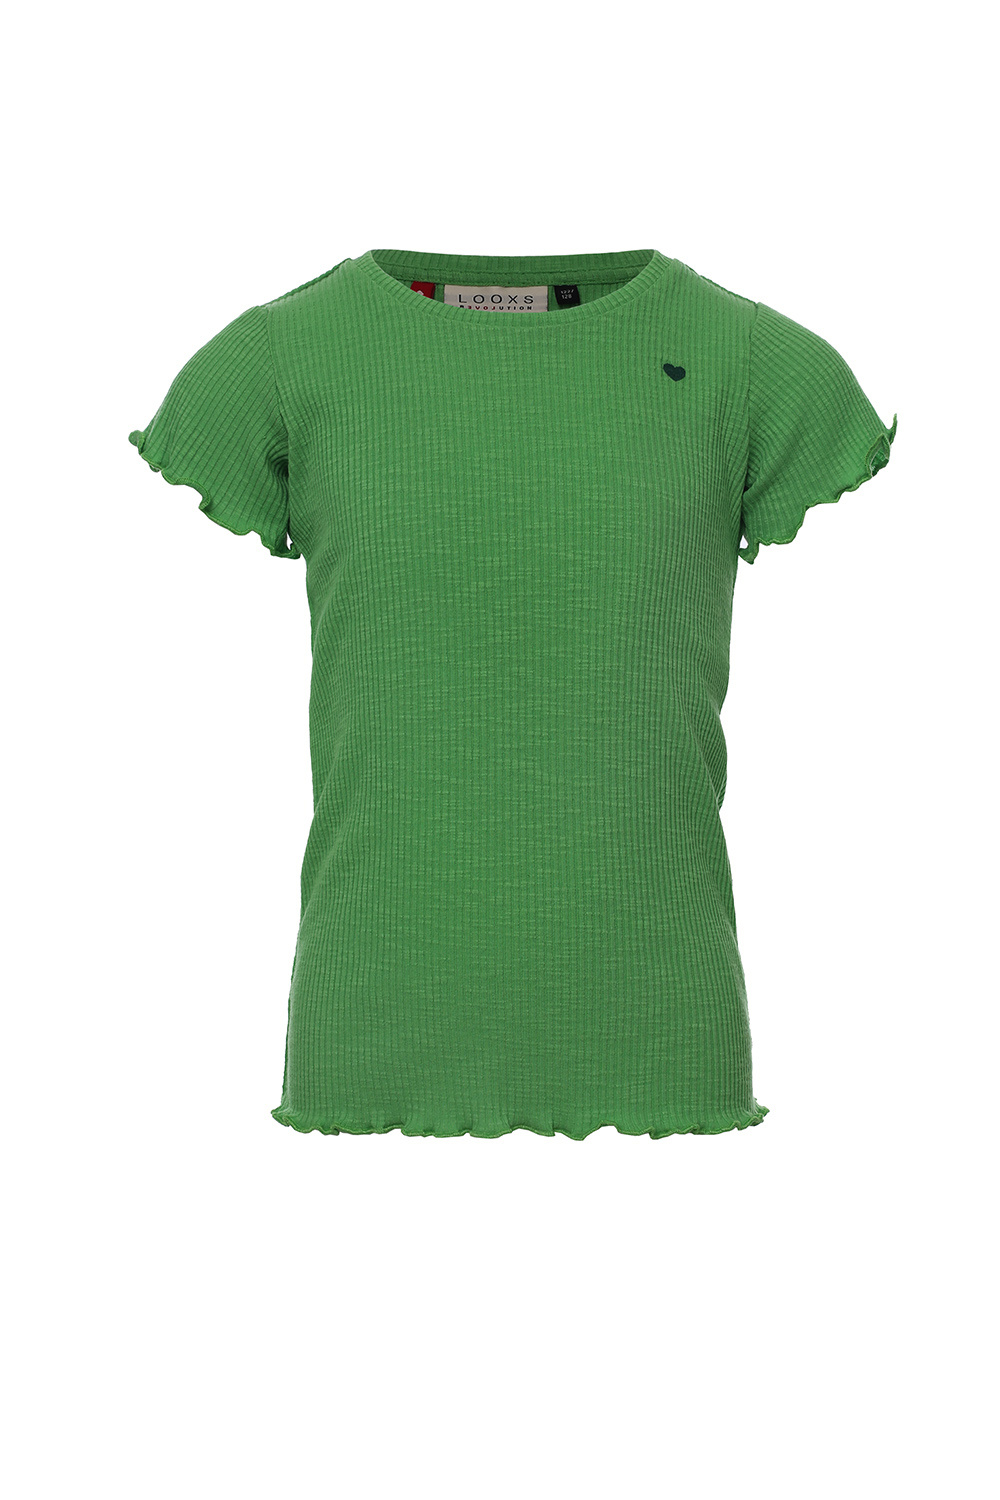 Looxs Revolution 2311-7420-302 Meisjes Shirt - Maat 104 - Groen van Polyester